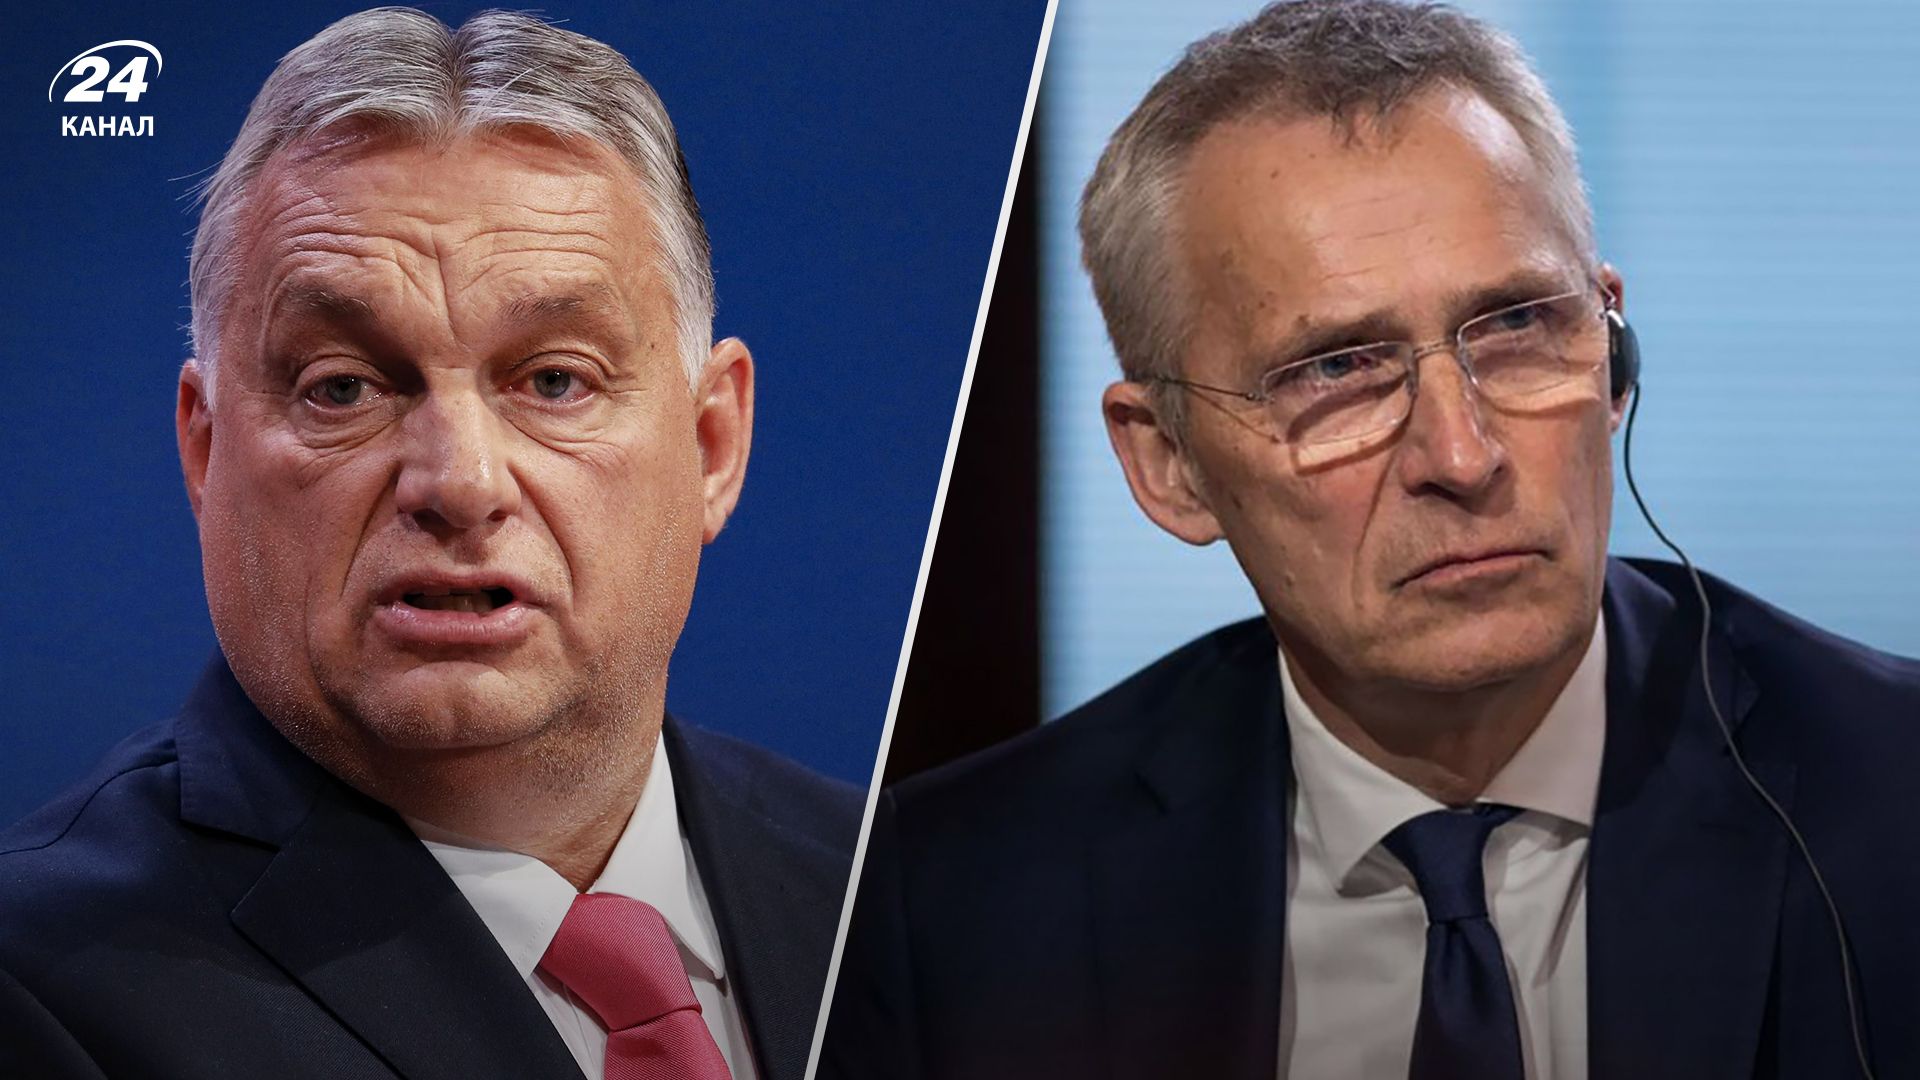 Віктор Орбан обурений заявою Єнса Столтенберга про майбутнє України у НАТО - деталі